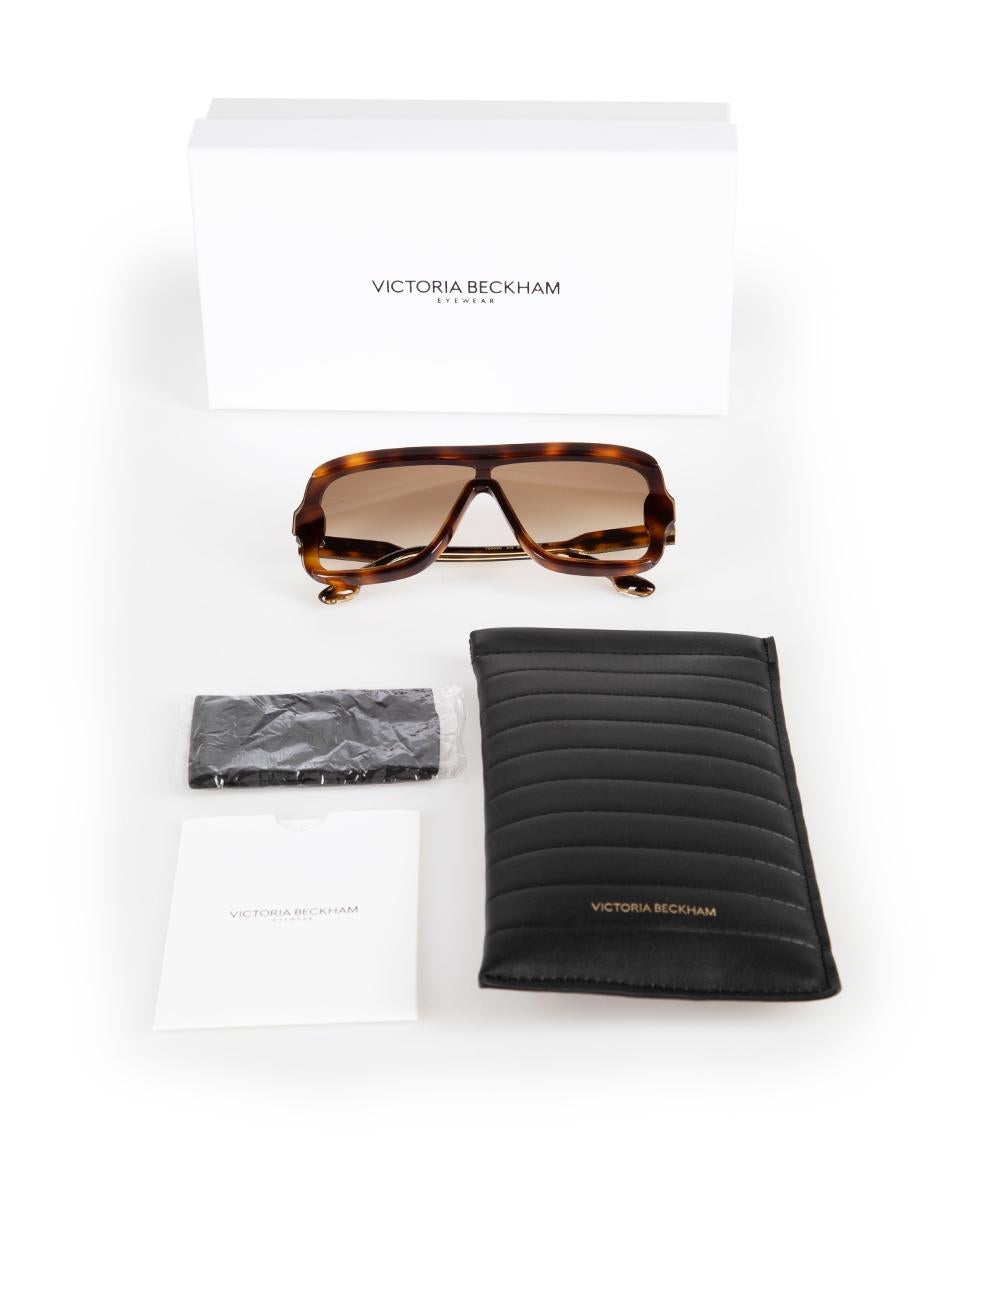 Victoria Beckham Brown Tortoiseshell Shield Sunglasses For Sale 4